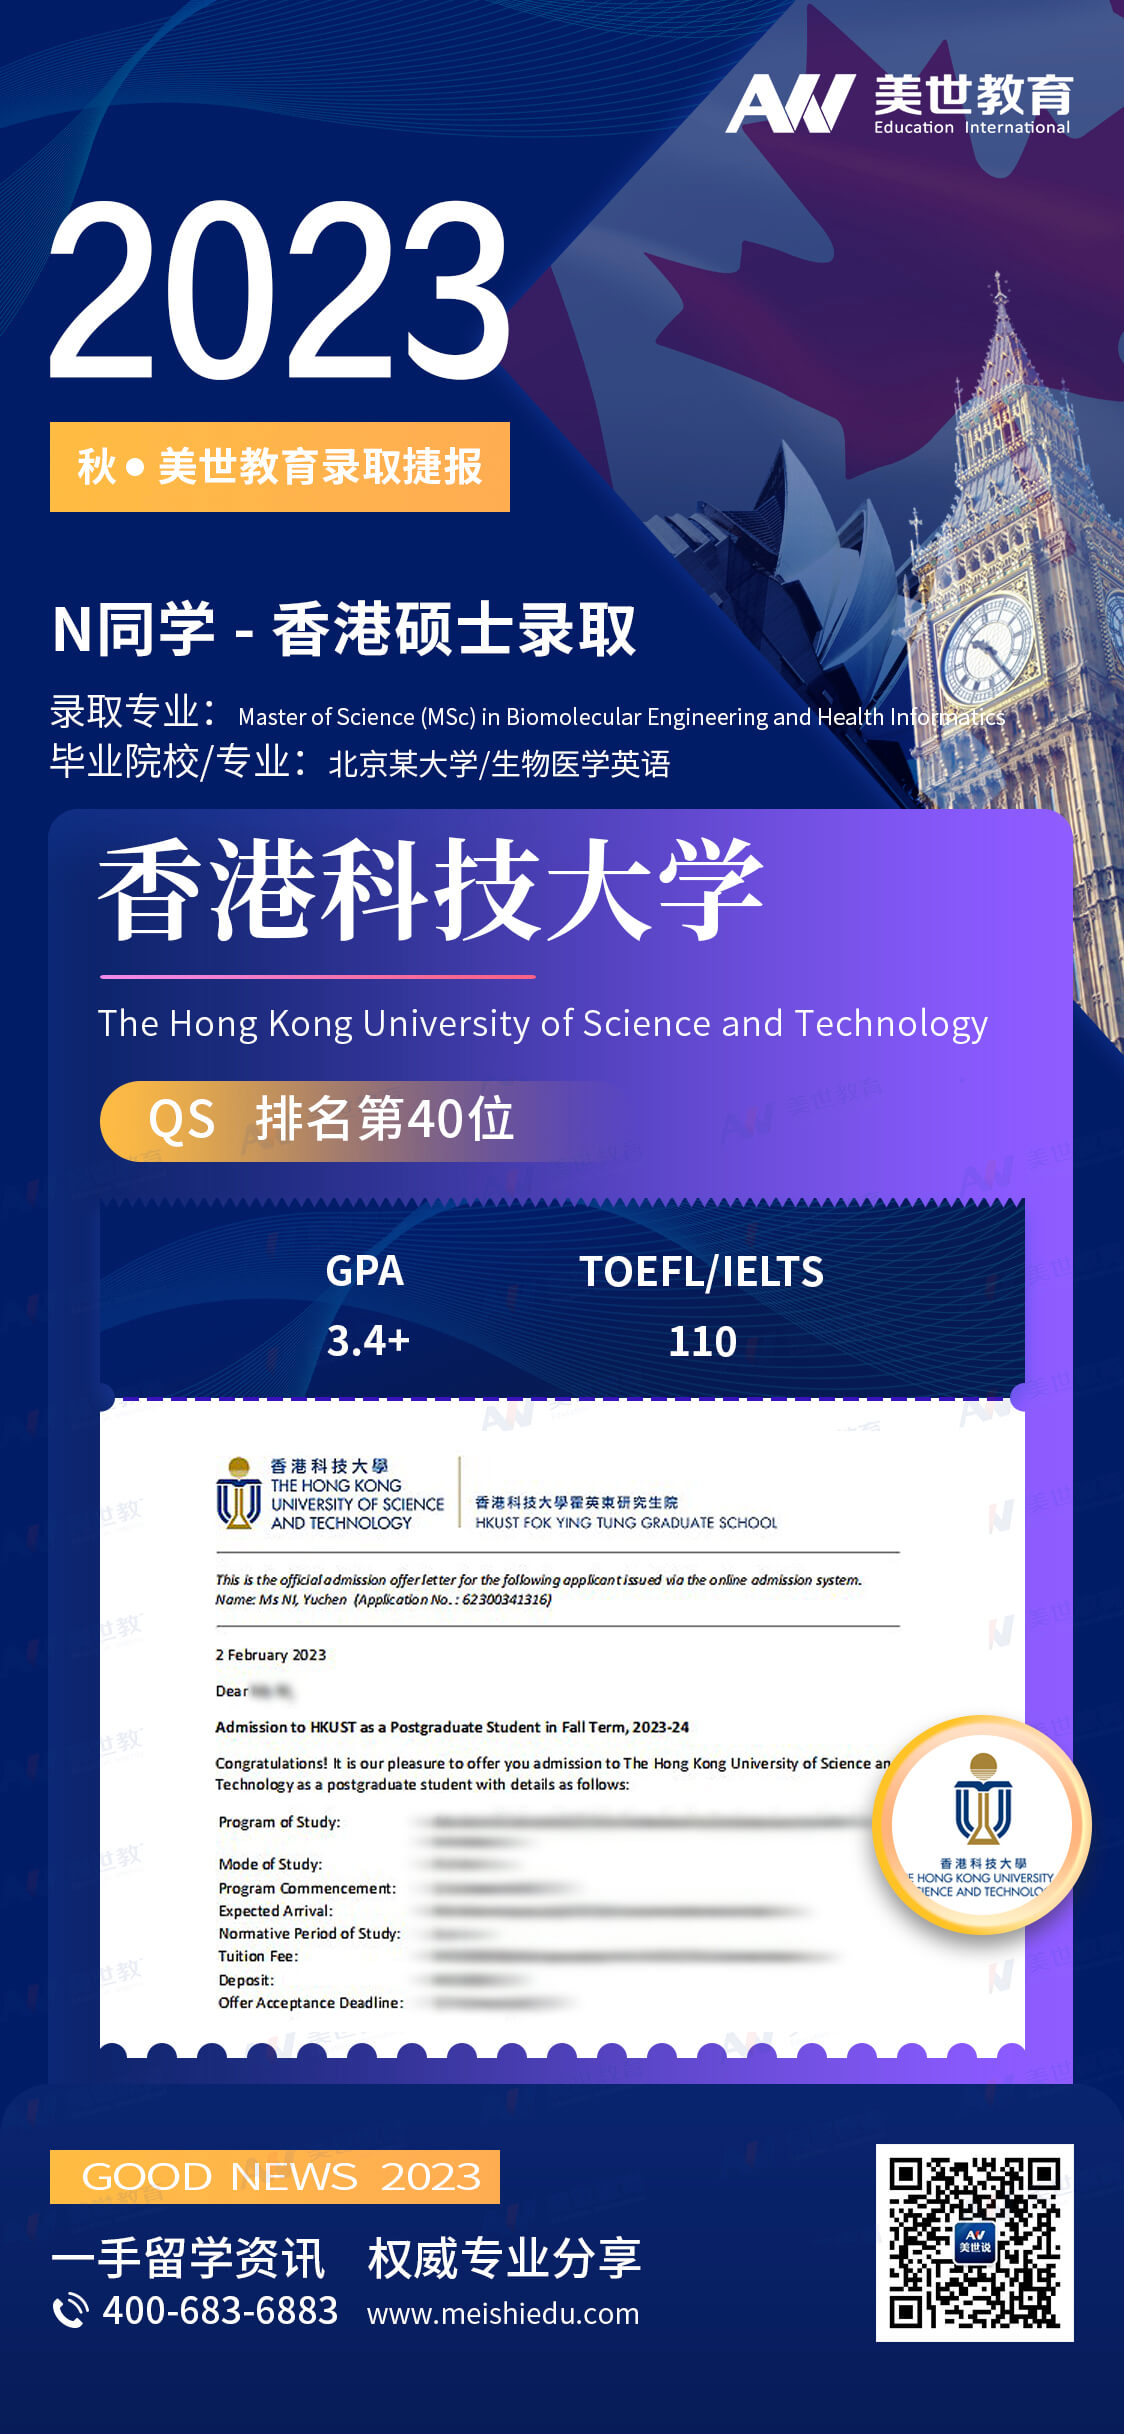 倪禹晨-香港科技大学-生物分子工程与健康信息学 (1).jpg